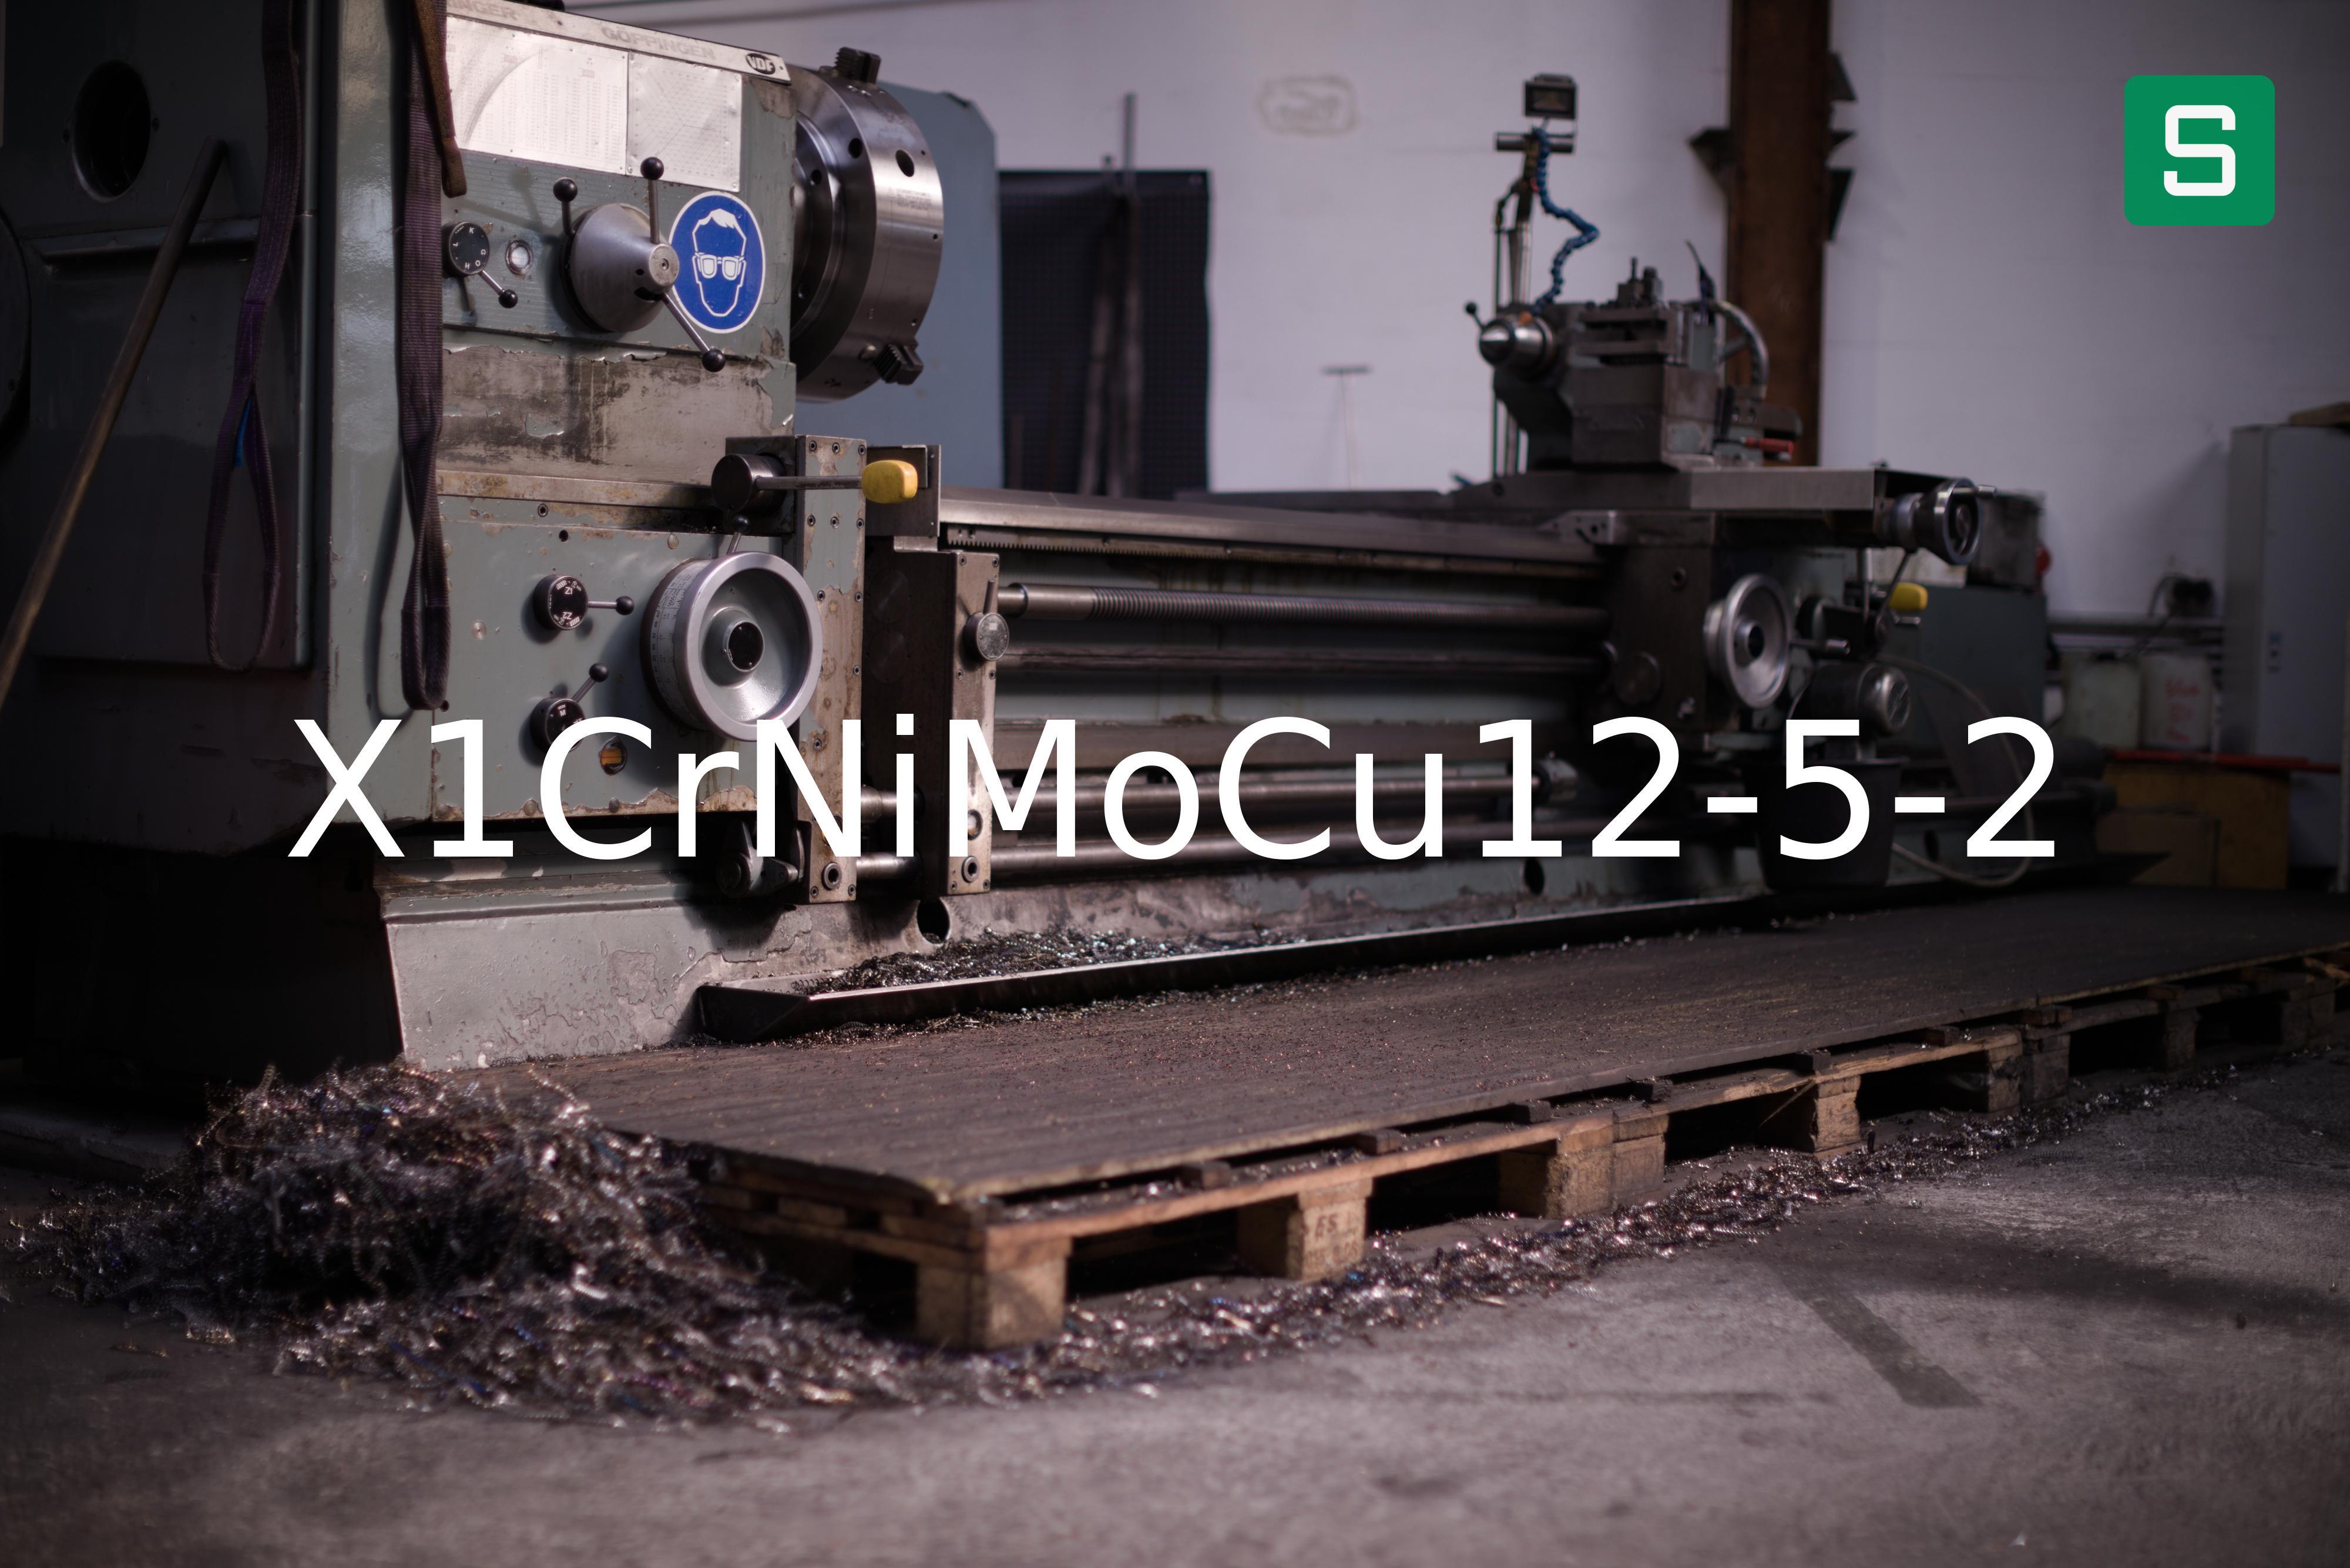 Steel Material: X1CrNiMoCu12-5-2